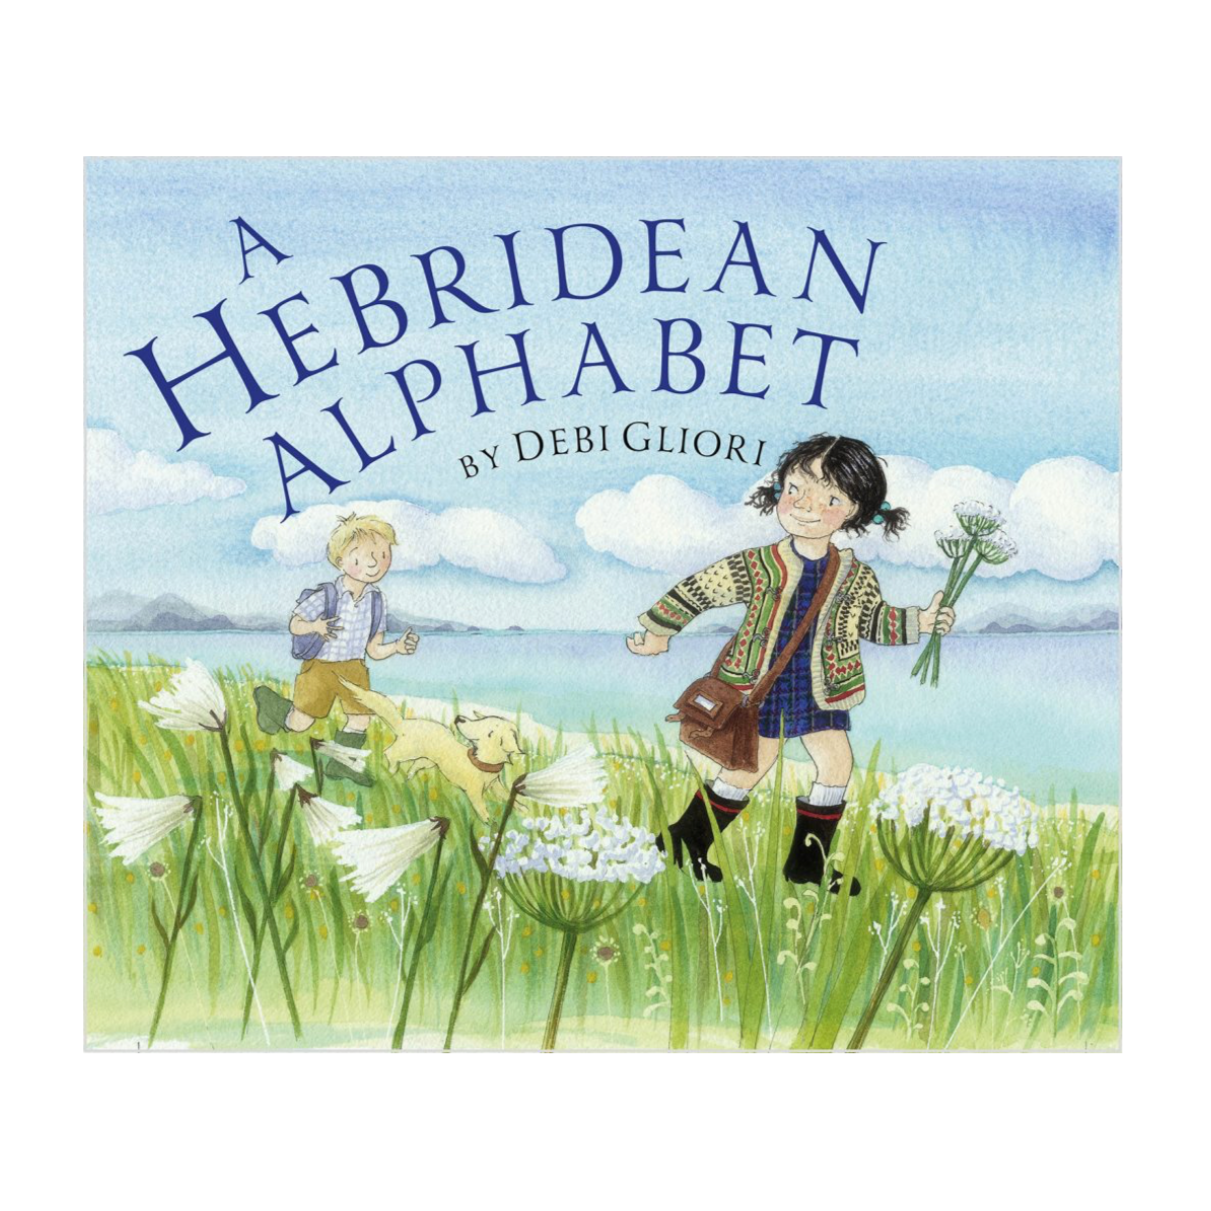 A Hebridean Alphabet